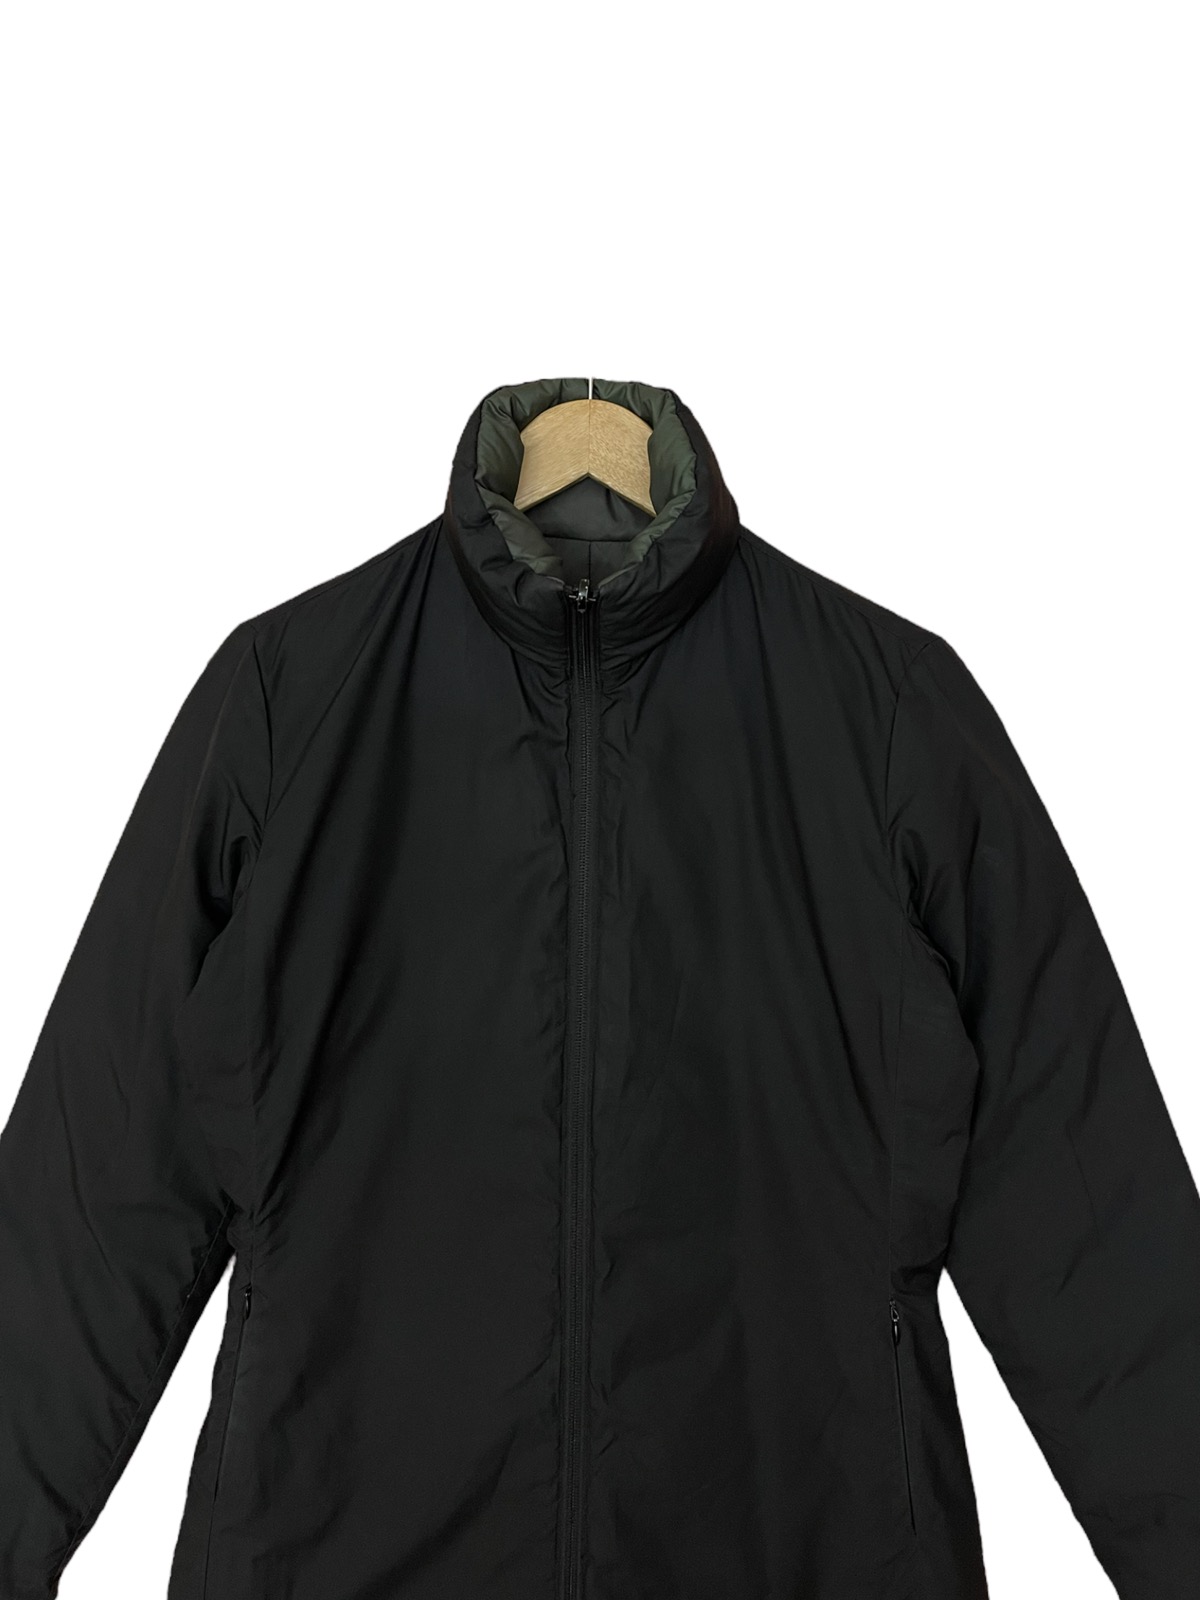 Moncler long puffer jacket reversible down jacket - 14